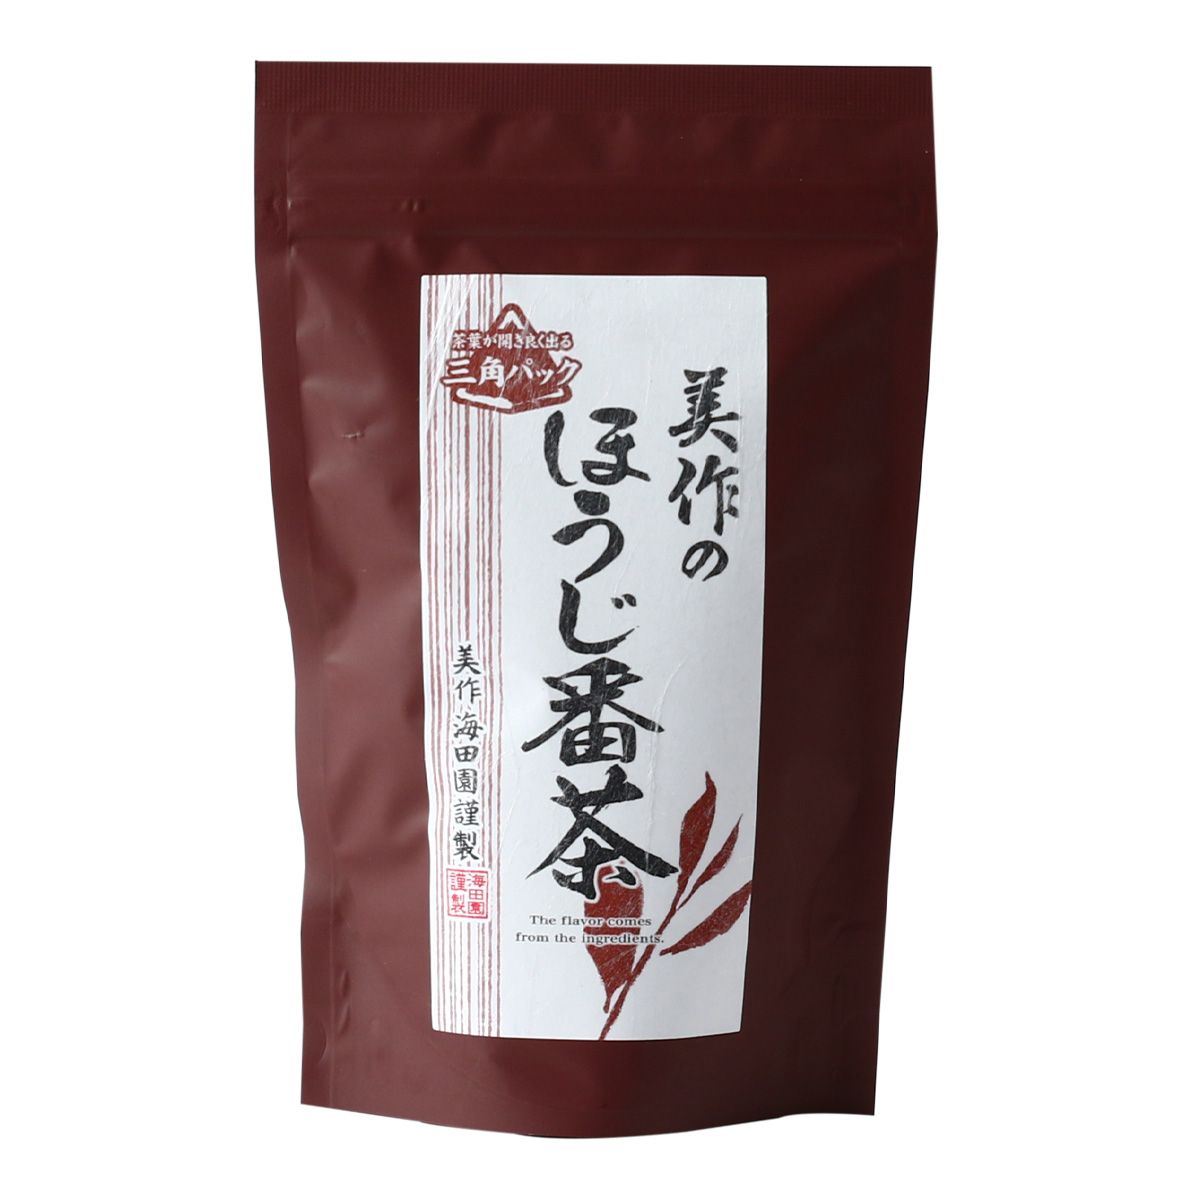 （商品説明） あっさりとした味わい深いお茶です。 海田地区は岡山県を代表する茶処で、その栽培は室町時代から受け継がれてきたともいわれています。 県内外で海田茶として幅広い年齢層の方に親しまれています。 その岡山県美作地区で大切に育まれた茶葉を使用しました。 乾燥させた後、強火で一気に炒りあげた茶葉は、香り高く渋みも少なく、あっさりとした味わい深いお茶です。 お湯だしはもちろん、水出しでもお楽しみいただけます。(商品仕様)サイズ：約高さ5.50×幅14.00×奥21.80mm重さ：約96.00g原産国：日本 (原材料) 緑茶(岡山県美作市産) 保存方法：常温 高温多湿を避け、移り香にご注意ください。賞味期限：240日アレルギー：なし